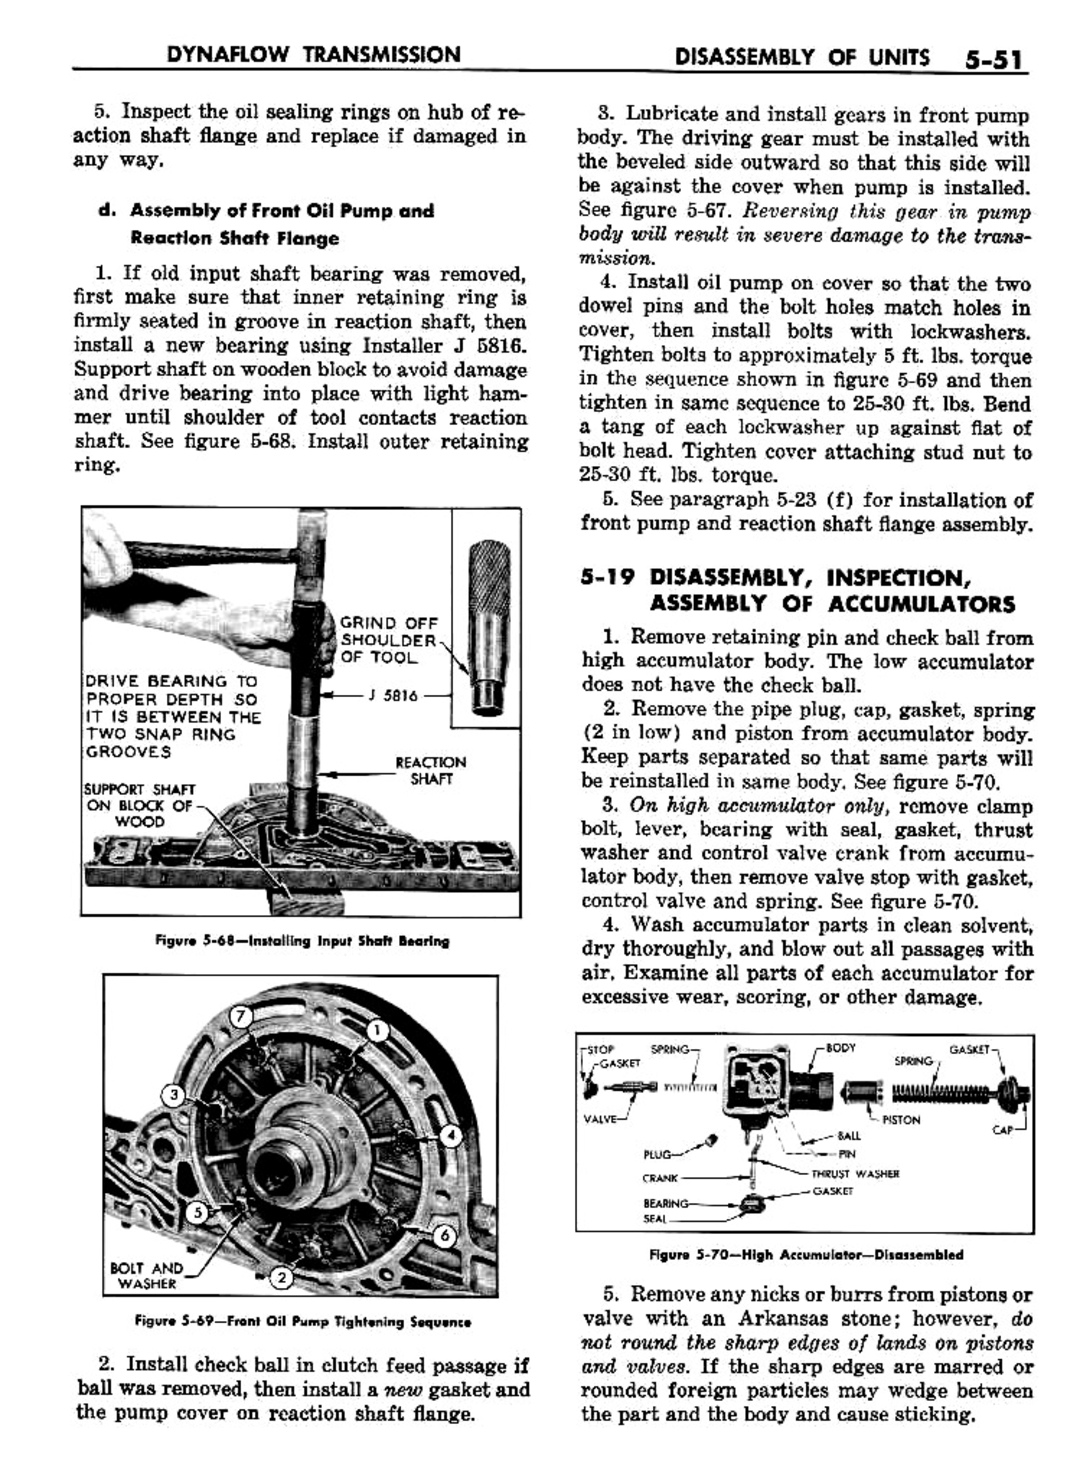 n_06 1957 Buick Shop Manual - Dynaflow-051-051.jpg